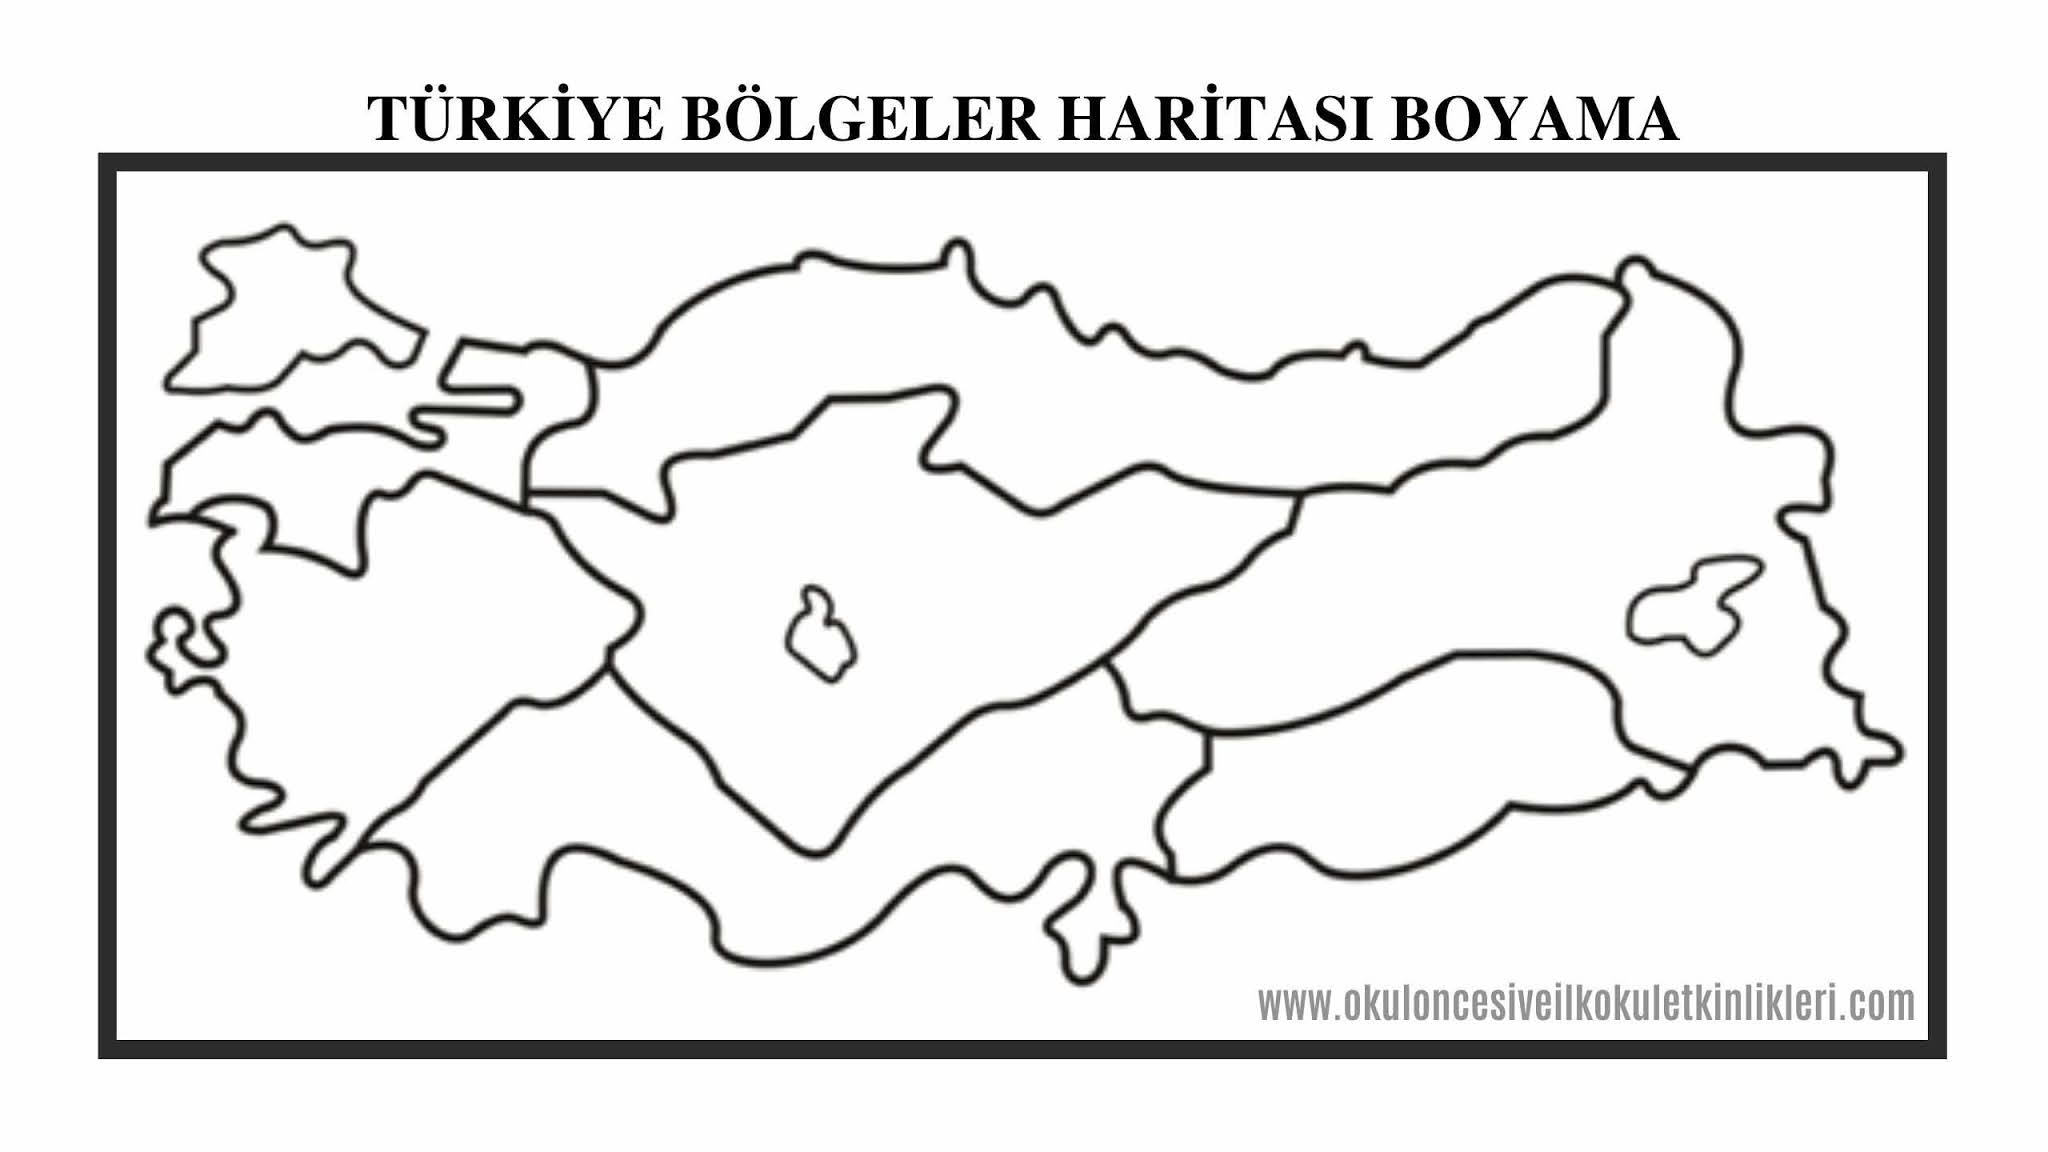 Sübvansiyon sırıtma Soyutlama türkiye haritası boyama pdf - patkow.com